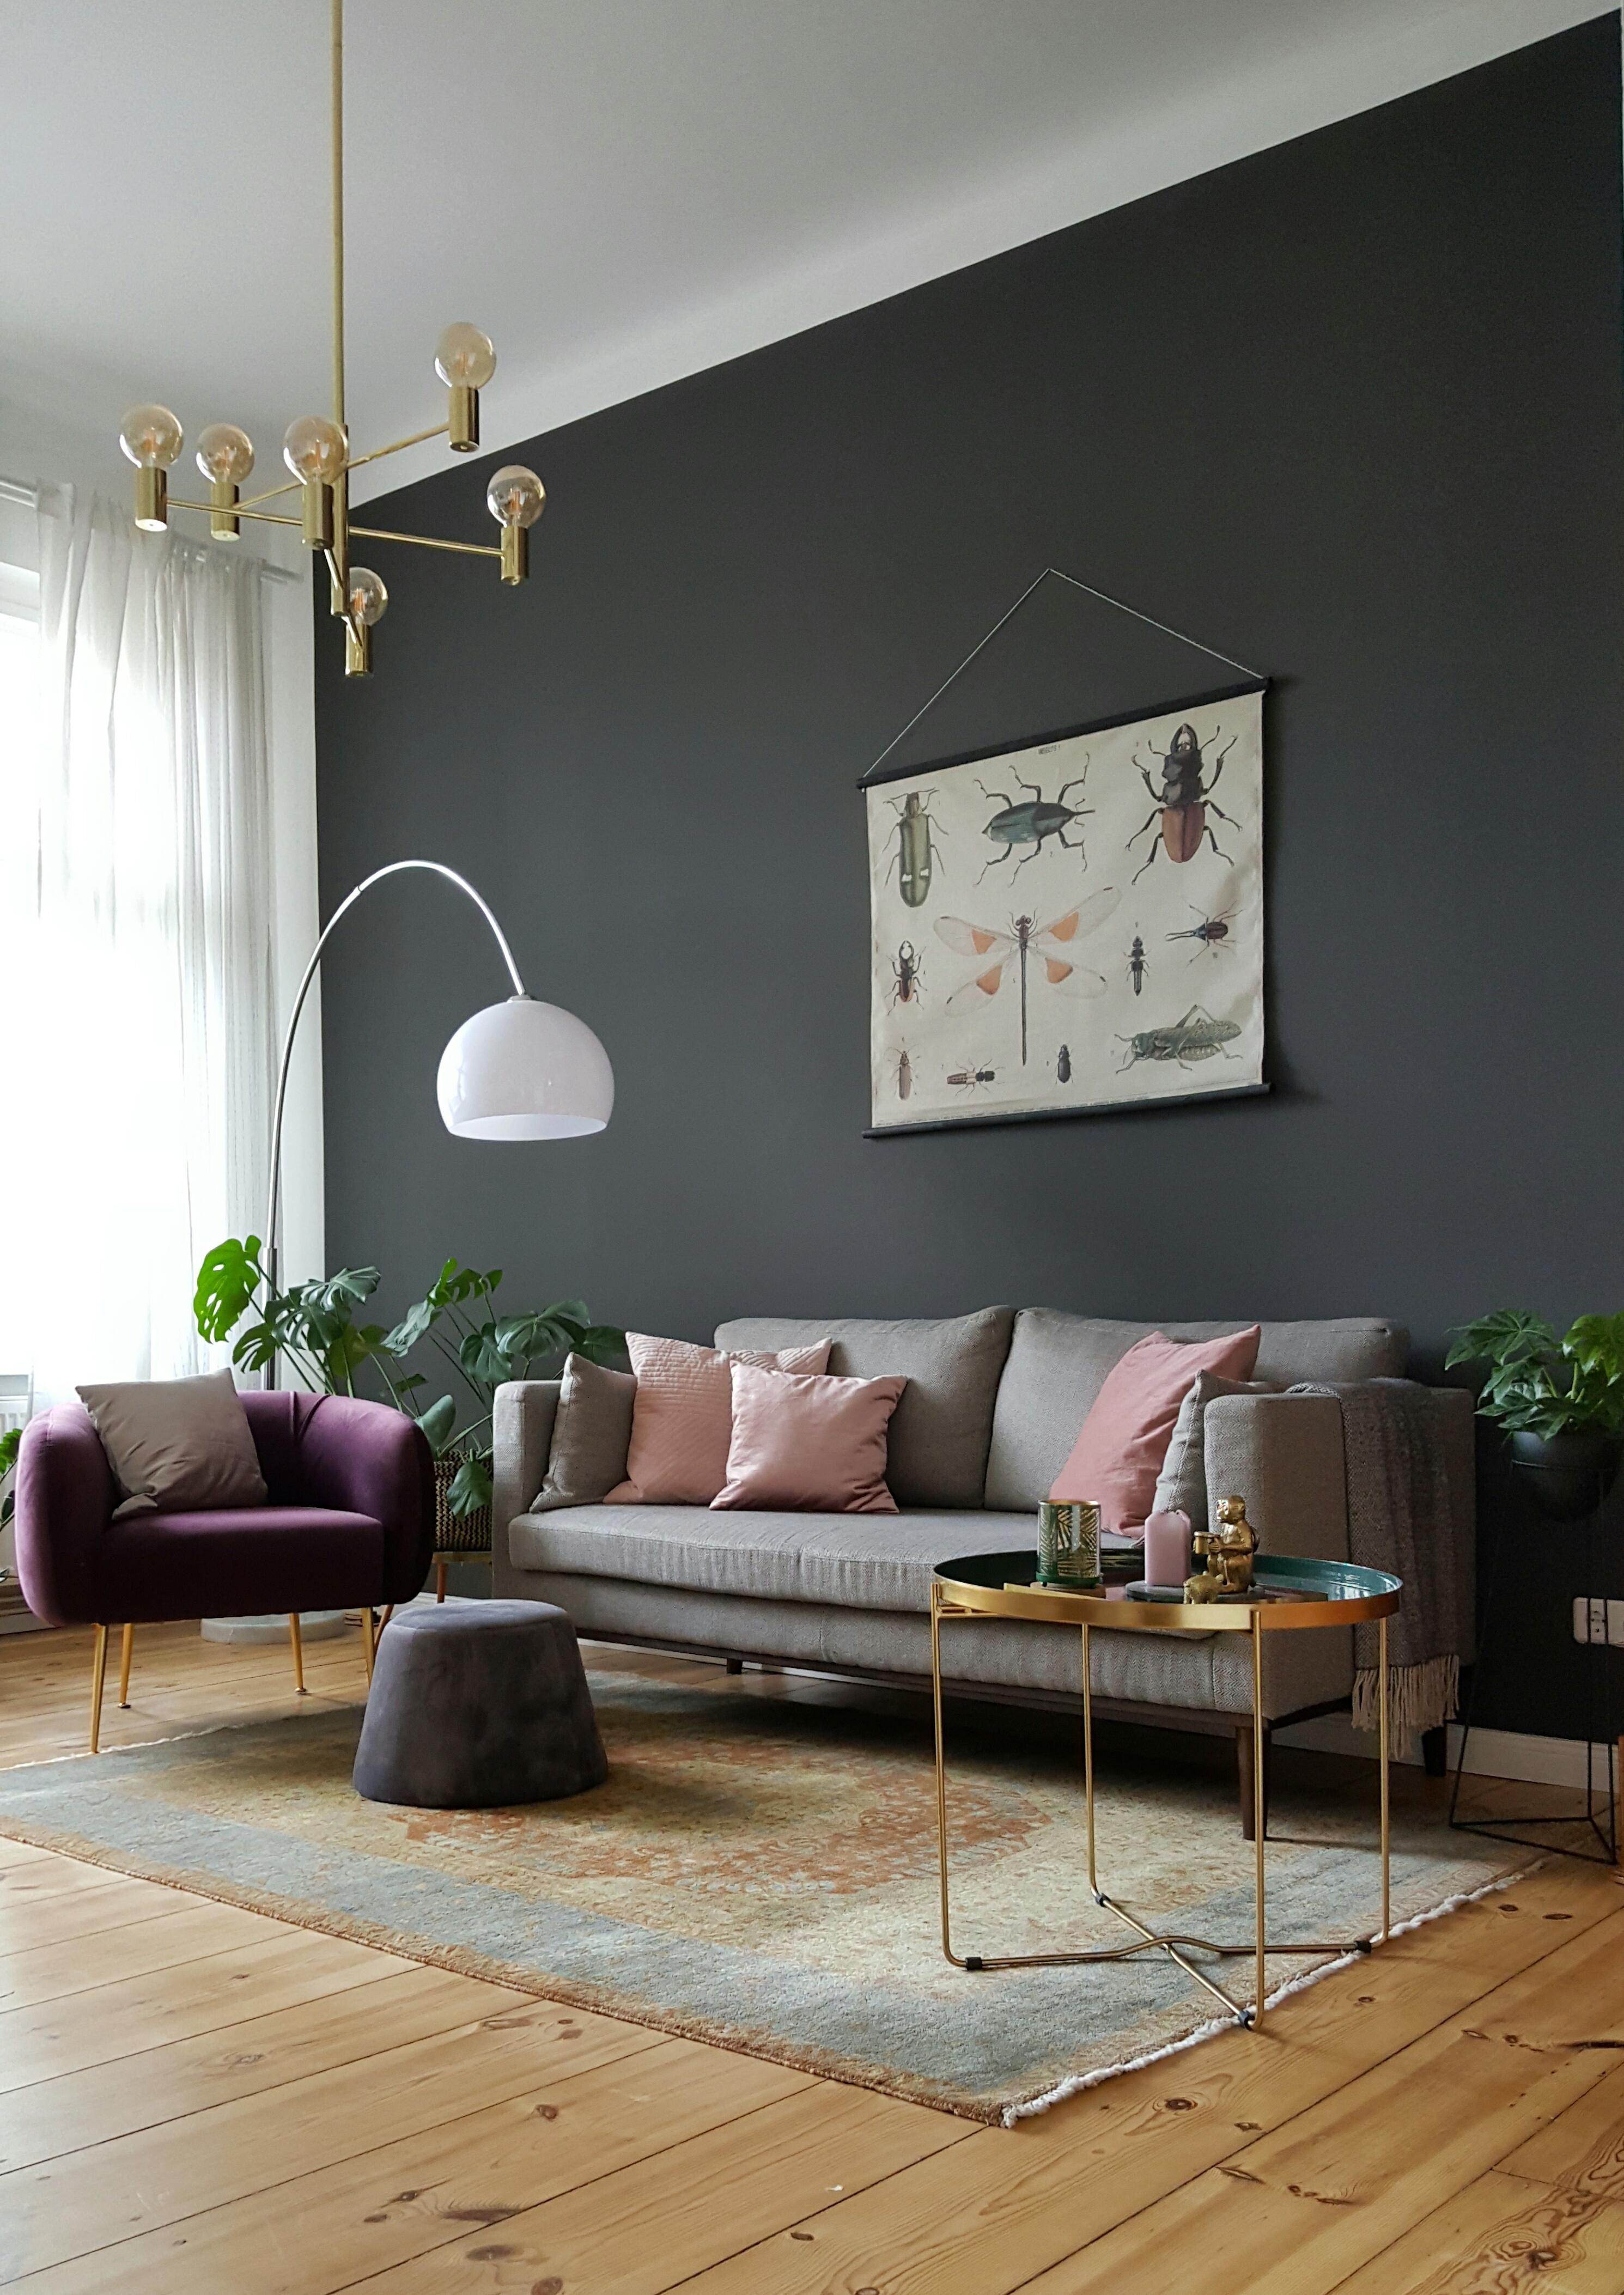 Neuer Teppich #wohnzimmer #skandinavisch #wandfarbe #messing #gold #altbau #altbauliebe 